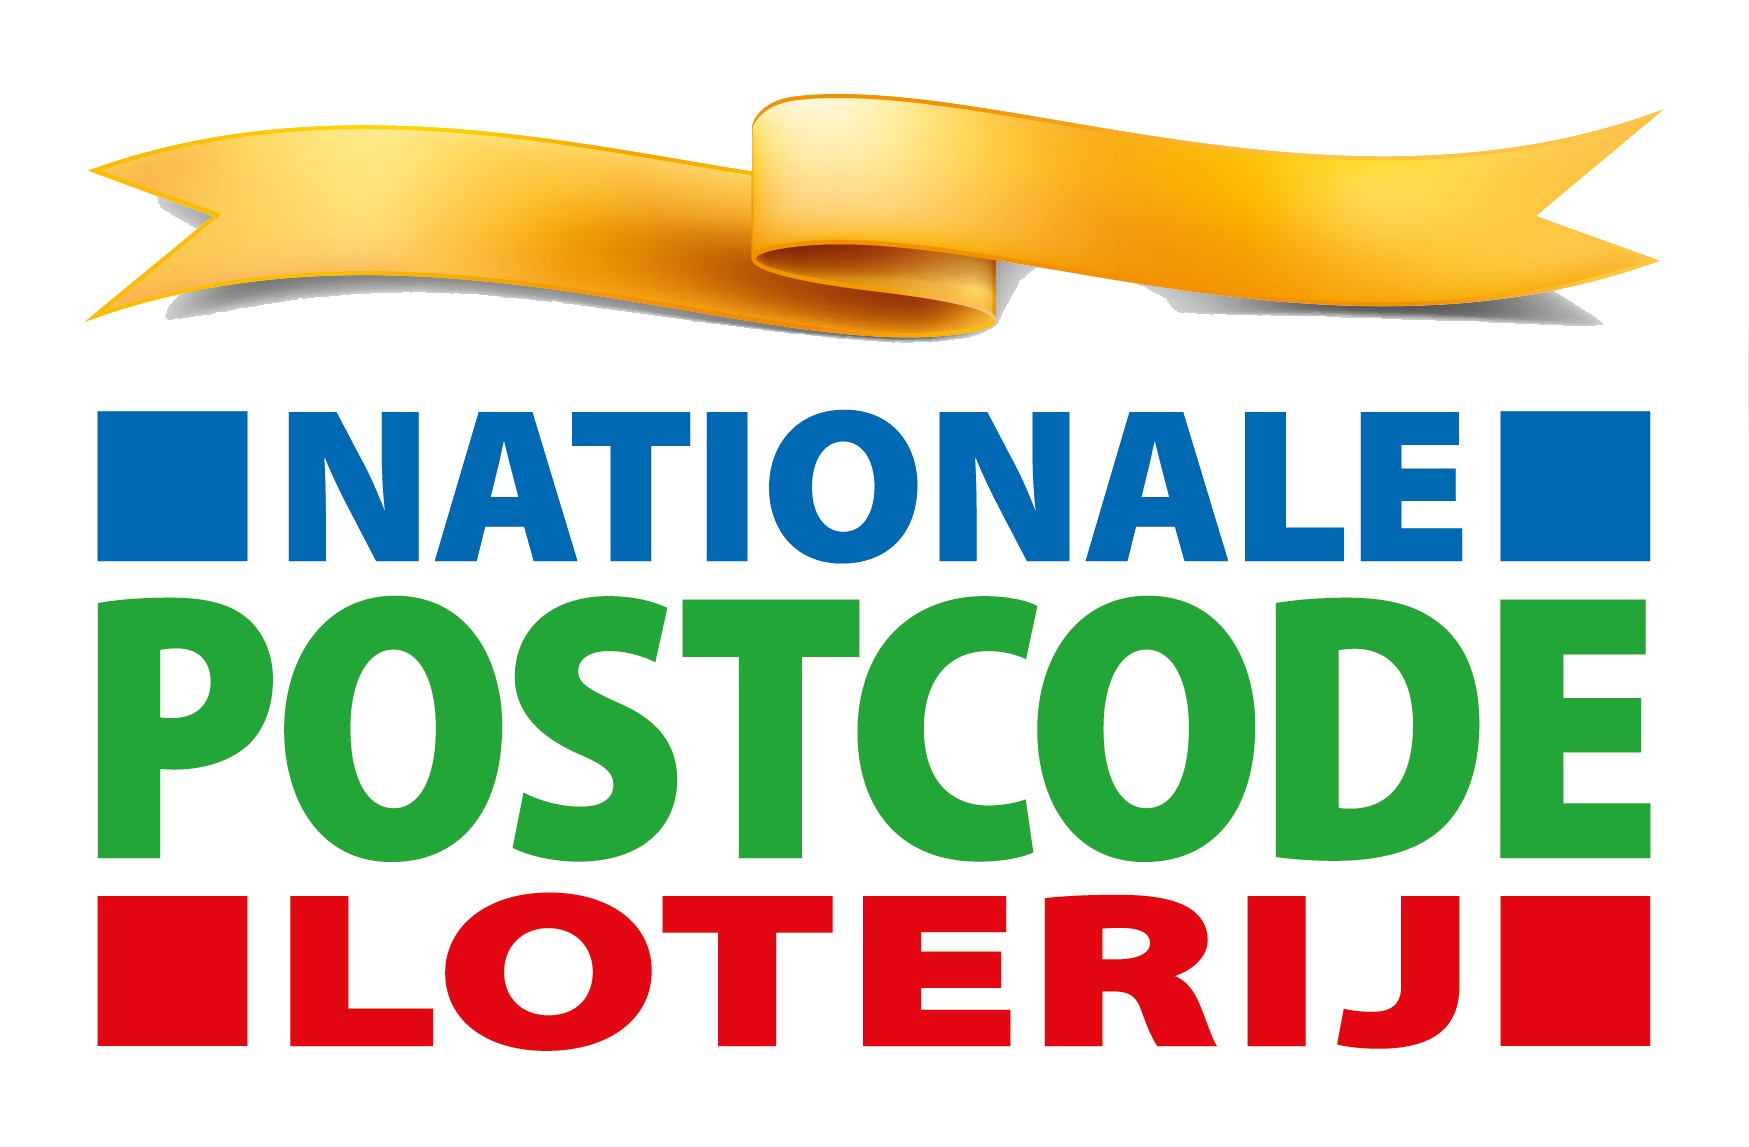 De Nationale Postcode Loterij: voor een betere wereld